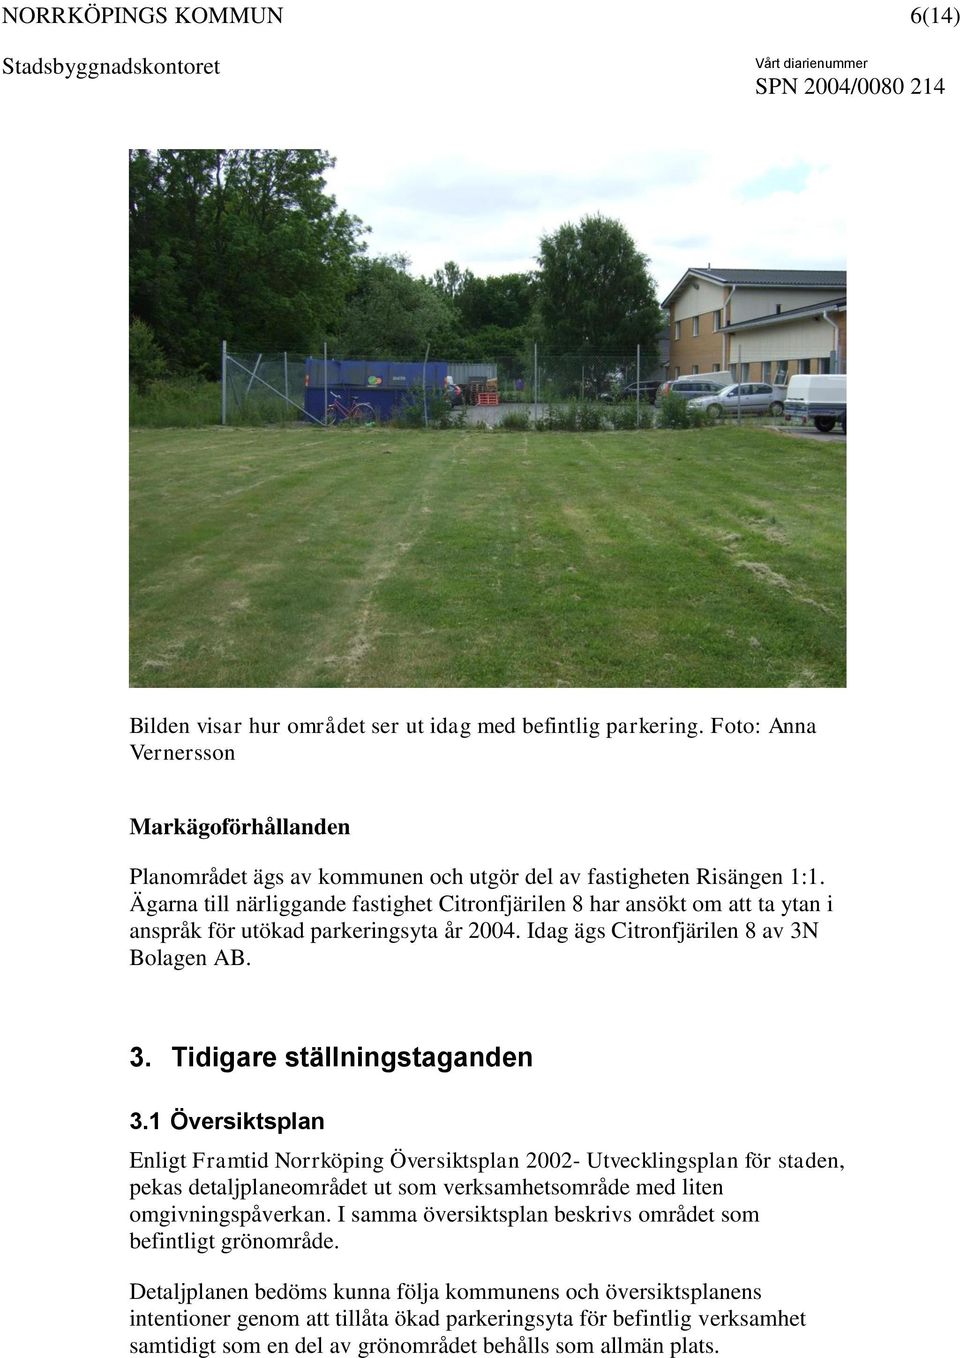 1 Översiktsplan Enligt Framtid Norrköping Översiktsplan 2002- Utvecklingsplan för staden, pekas detaljplaneområdet ut som verksamhetsområde med liten omgivningspåverkan.